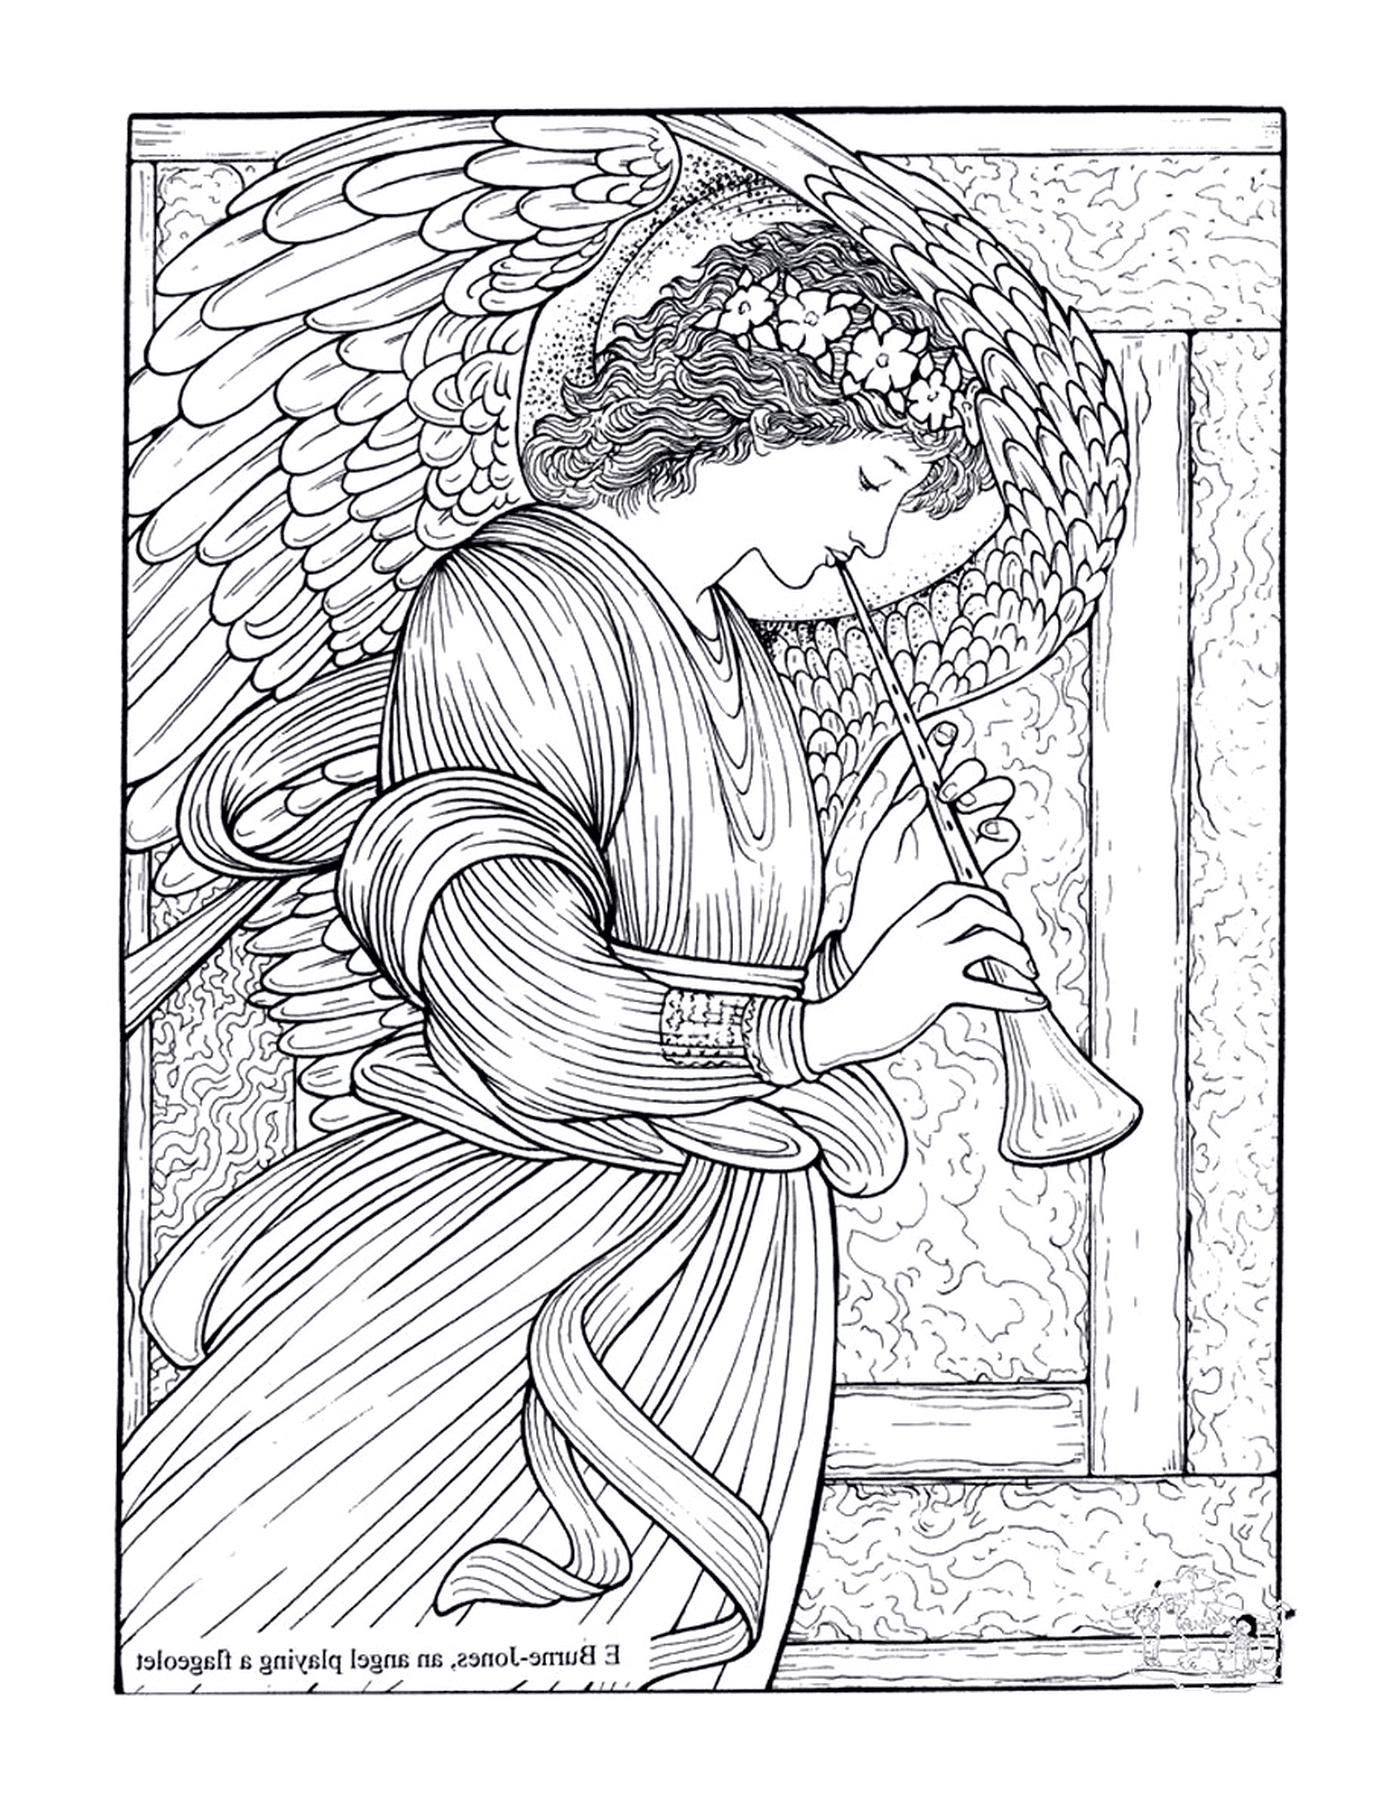   un adulte d'un ange jouant d'un flageolet selon Burne-Jones 